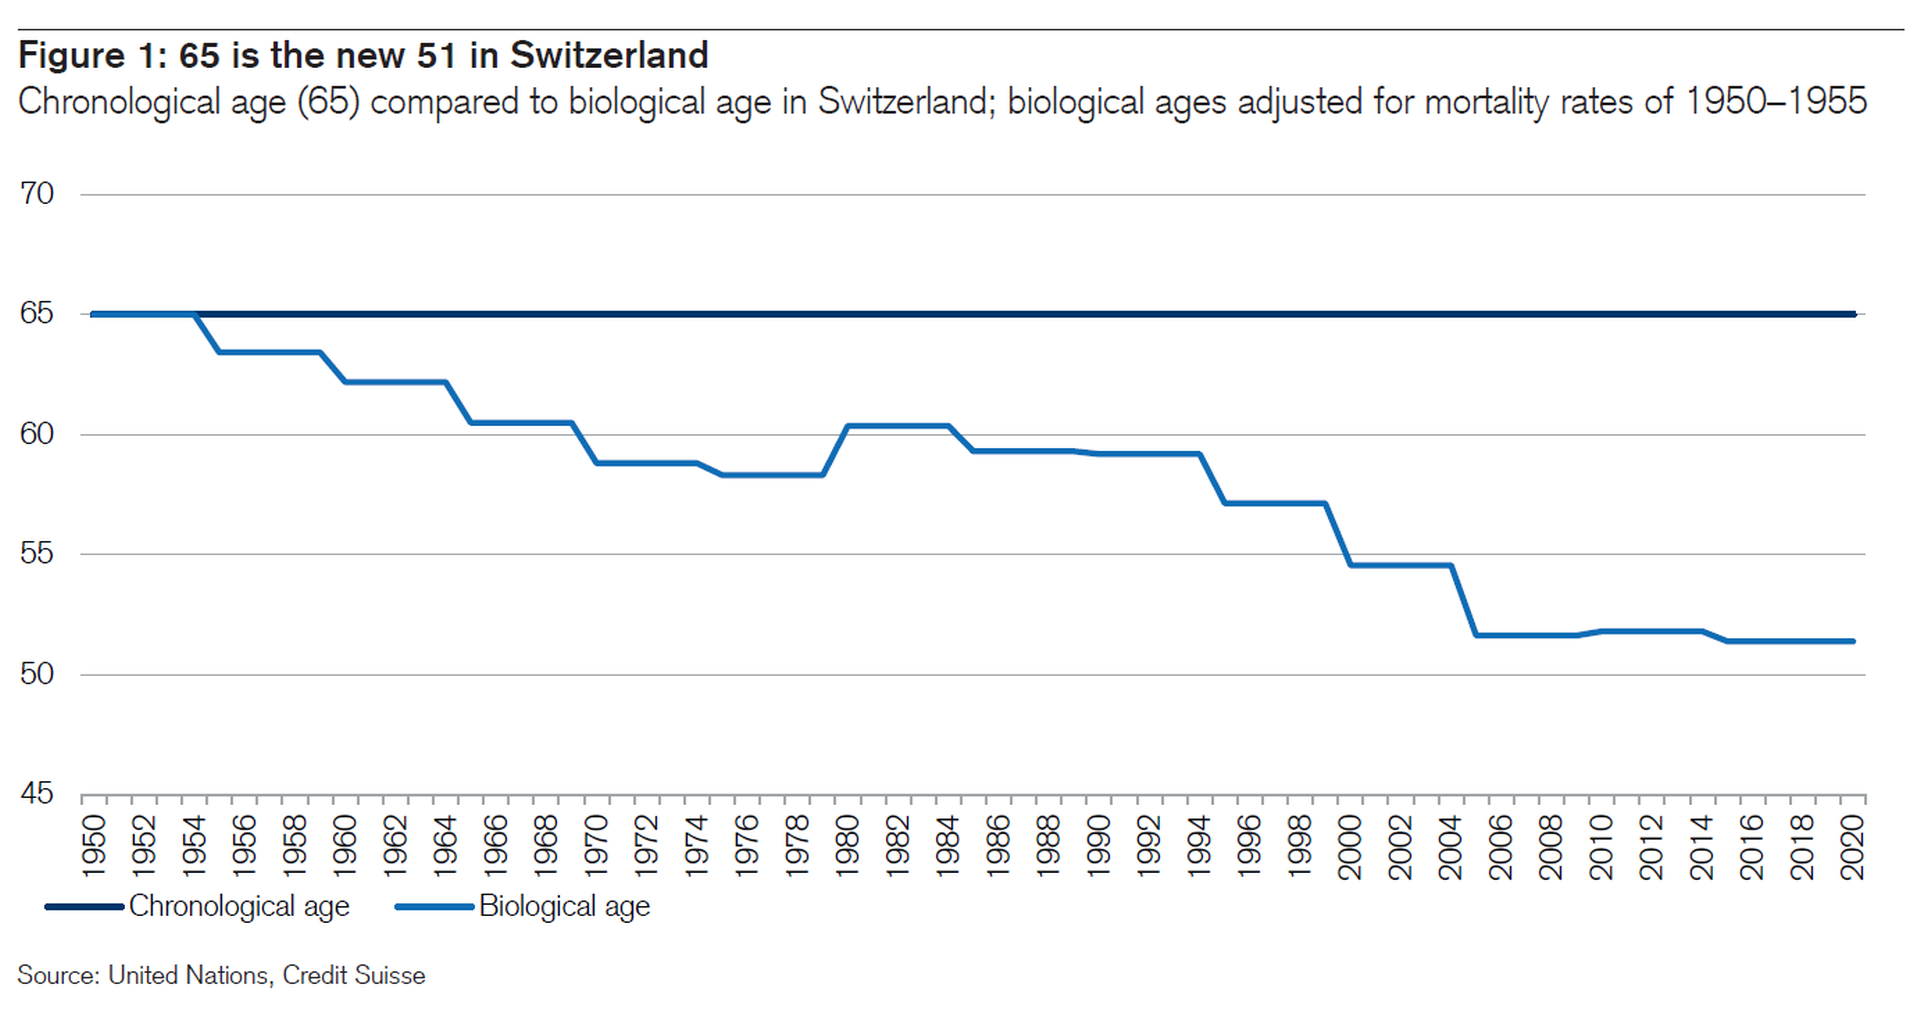 Previdenza in Svizzera: I pensionati si sentono sempre più giovani